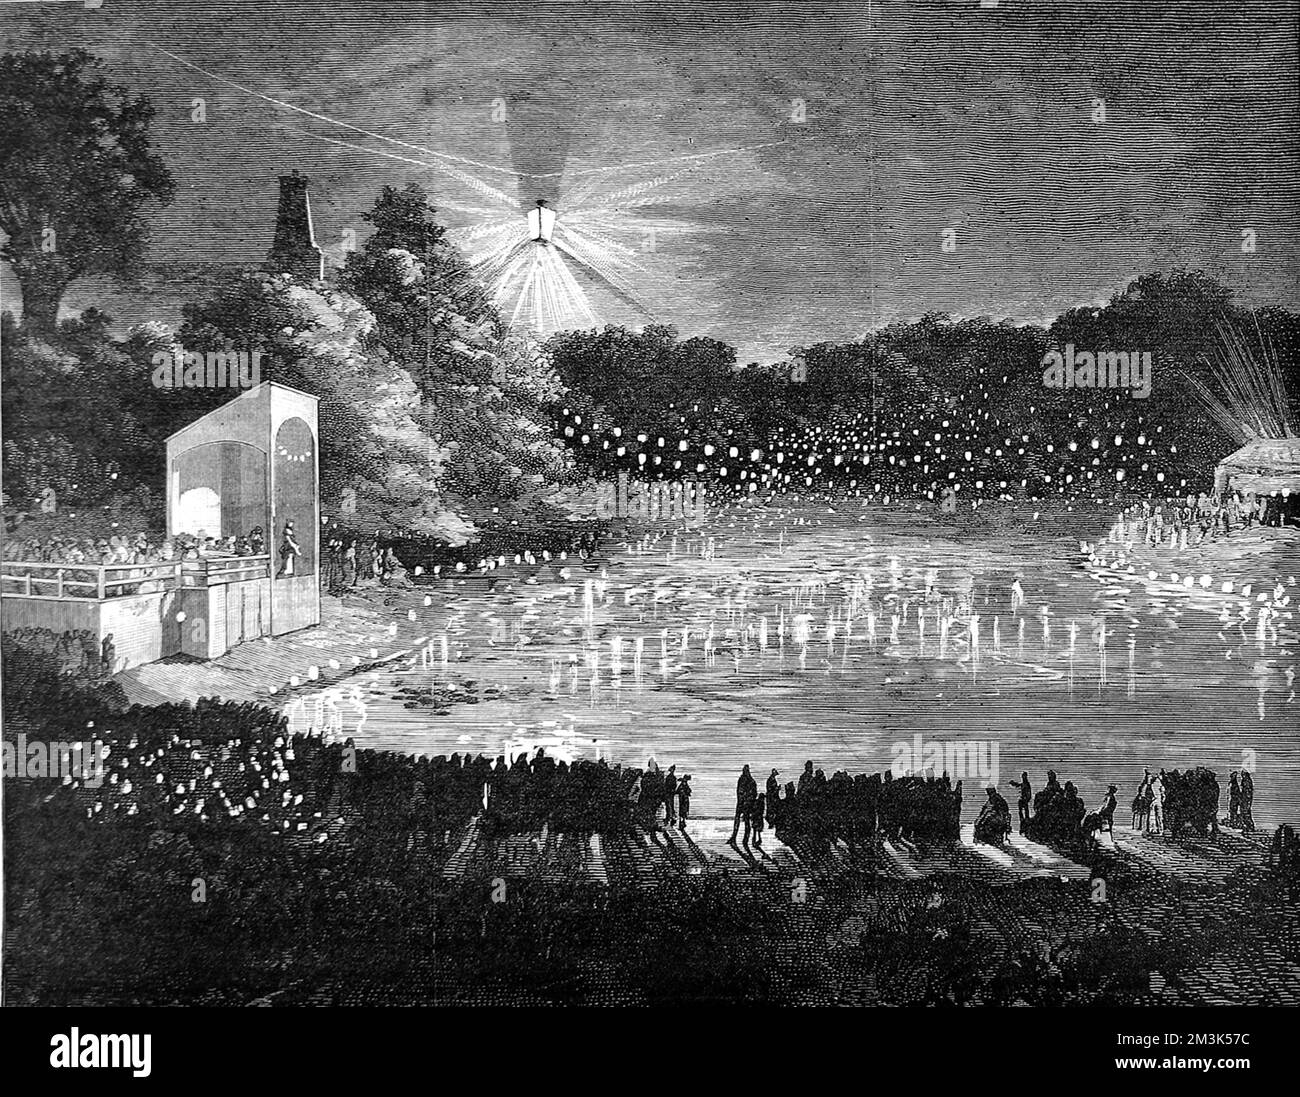 Una grande folla di turisti vittoriani che si godono l'illuminazione dei laghi Alexandra Palace, Londra, con luce elettrica. 1880 Foto Stock